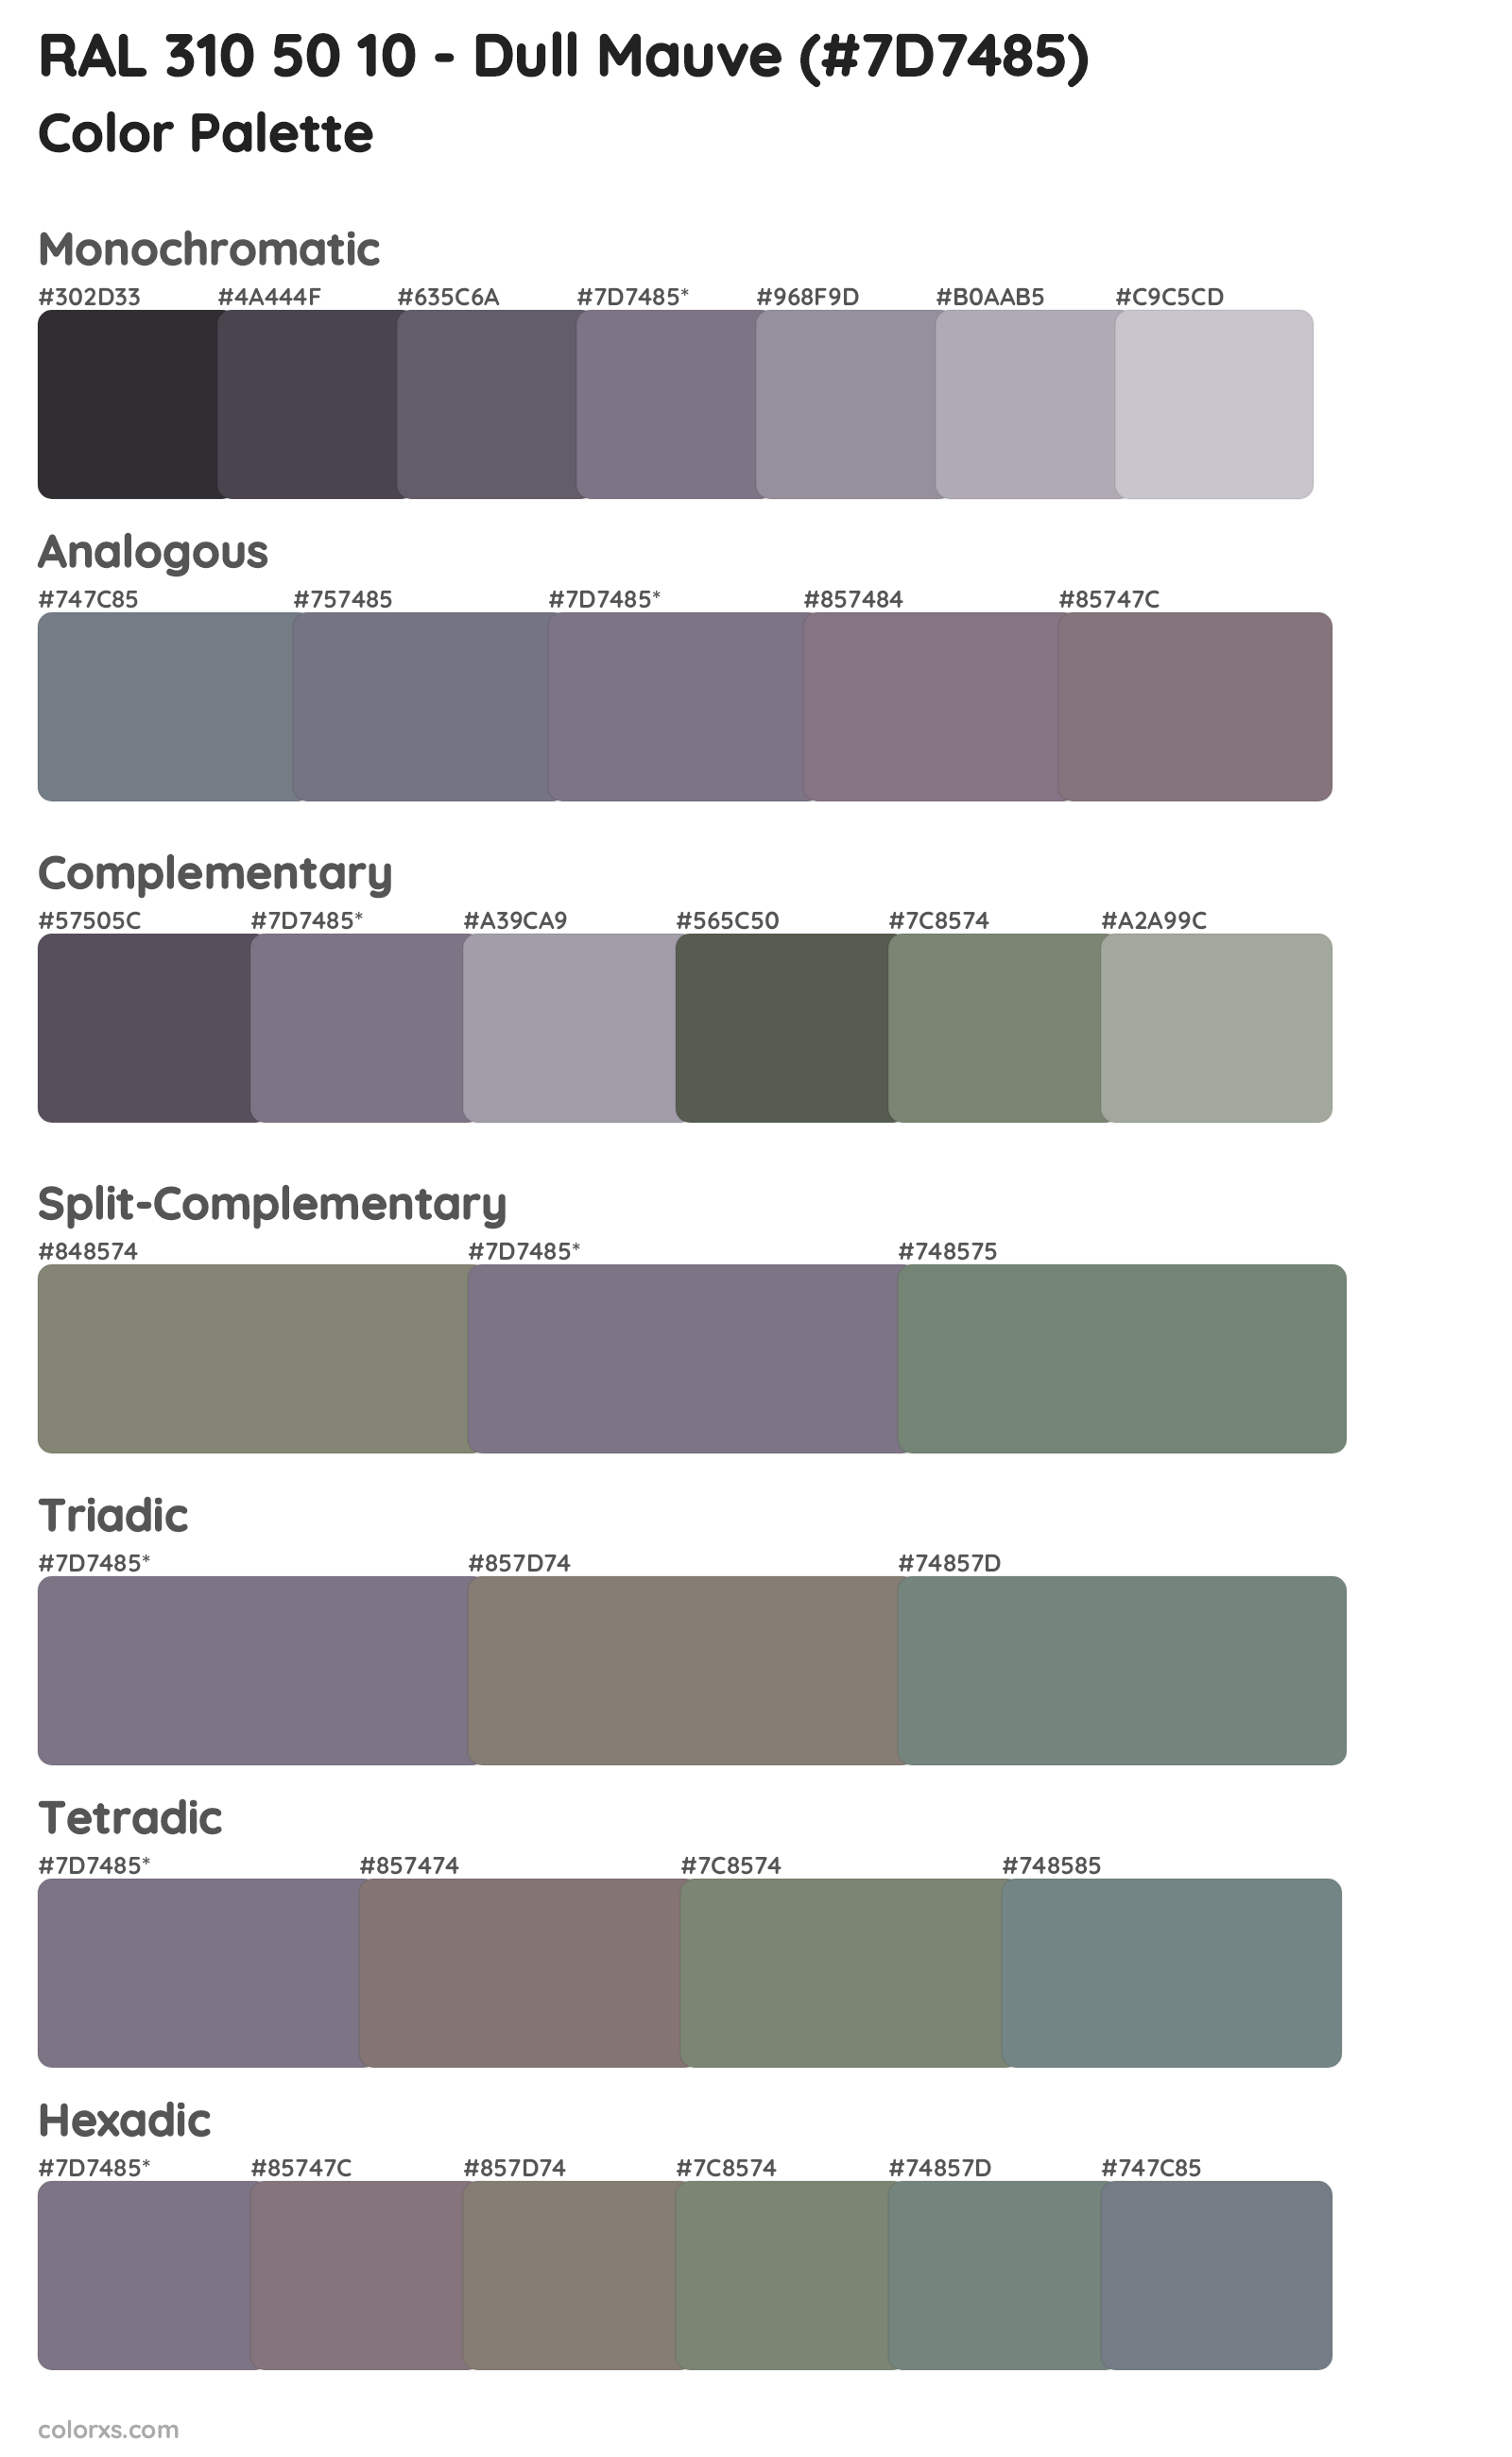 RAL 310 50 10 - Dull Mauve Color Scheme Palettes